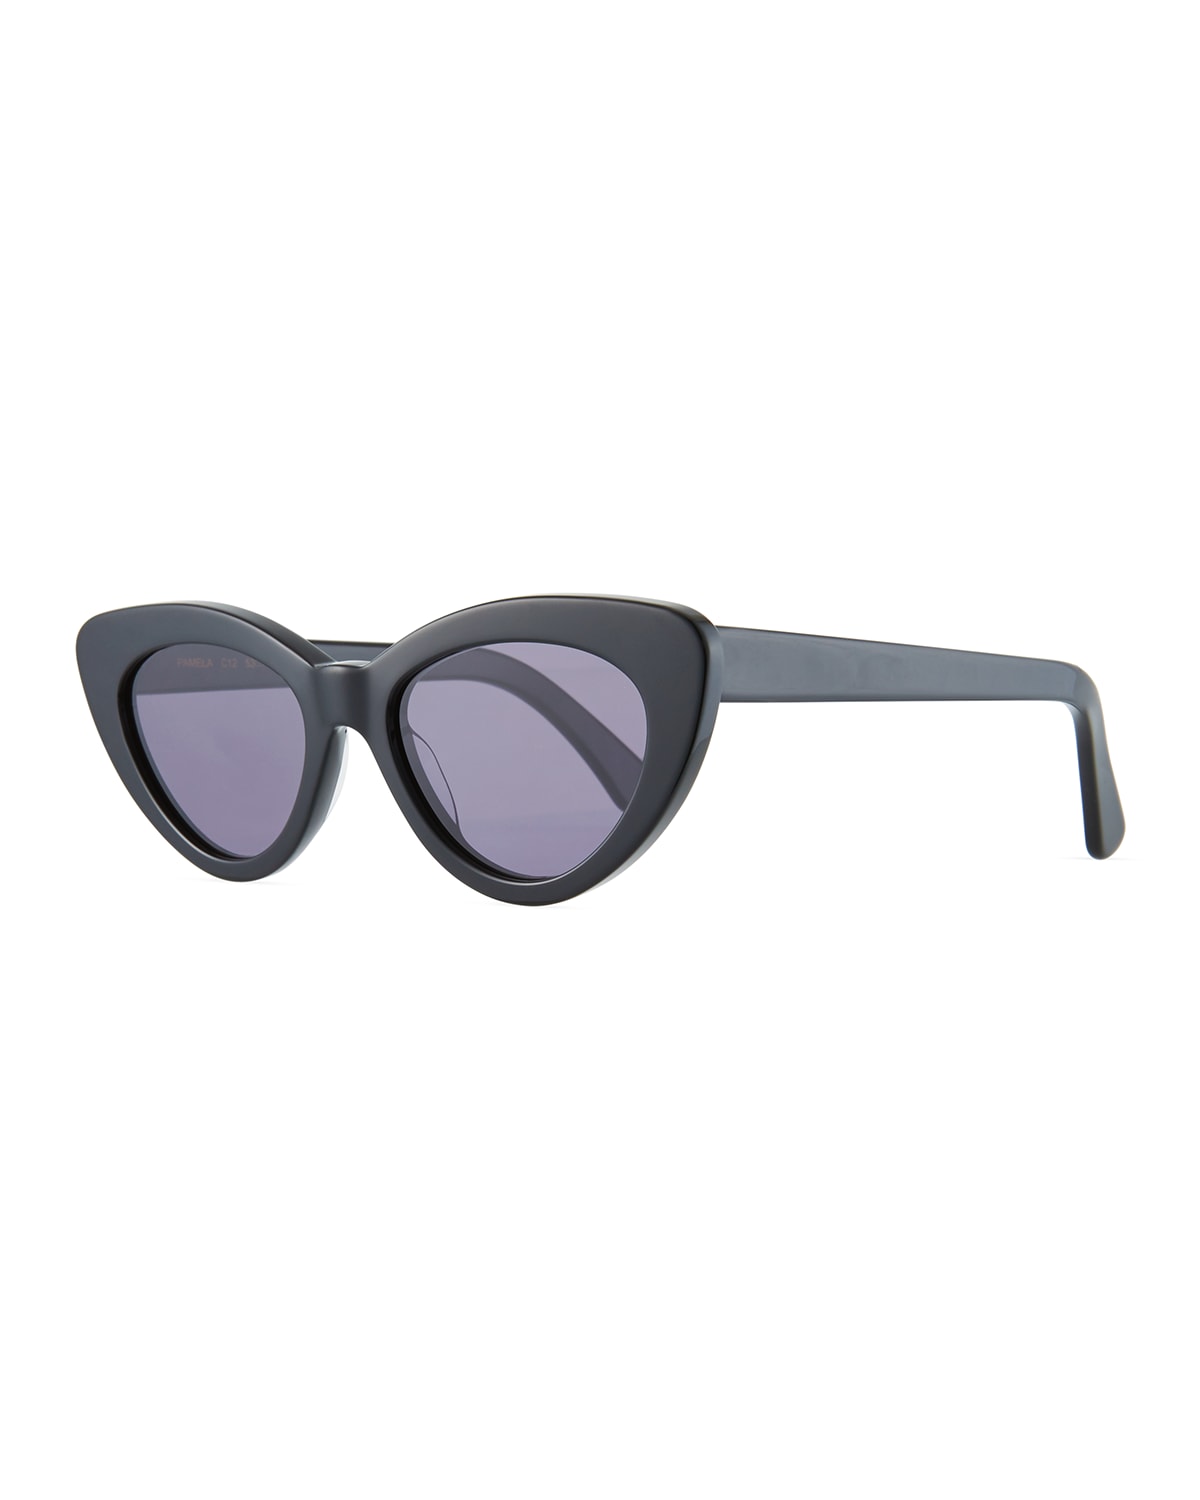 Pamela Two-Tone Cat-Eye Sunglasses